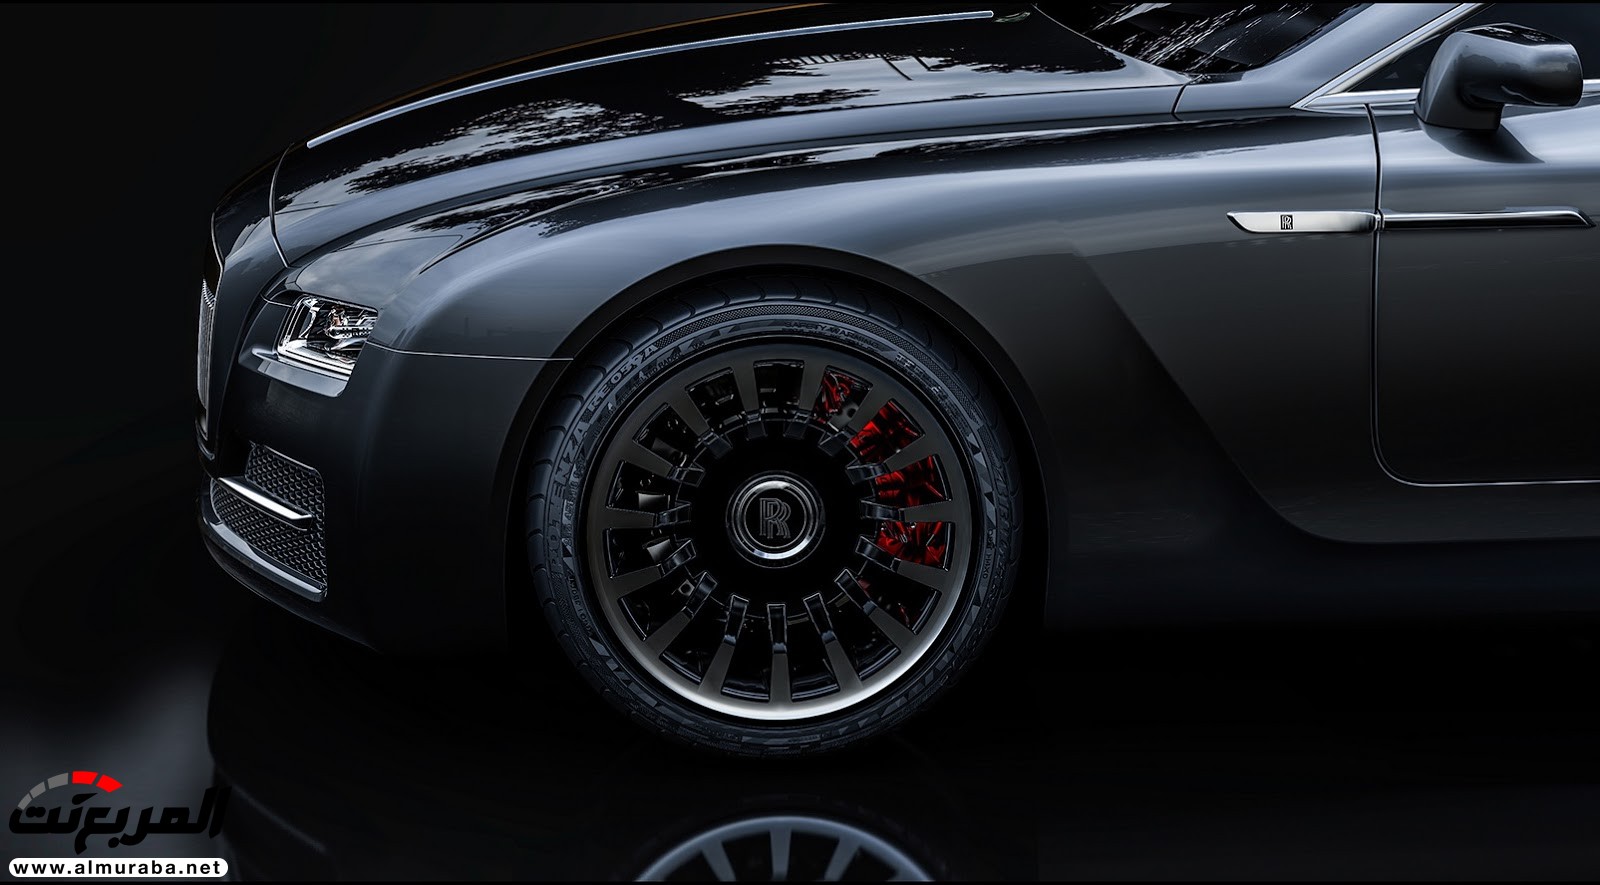 "صور افتراضية" لما يمكن أن تبدو عليه "رولز رويس" رايث كوبيه 2020 Rolls-Royce Wraith Coupe 63